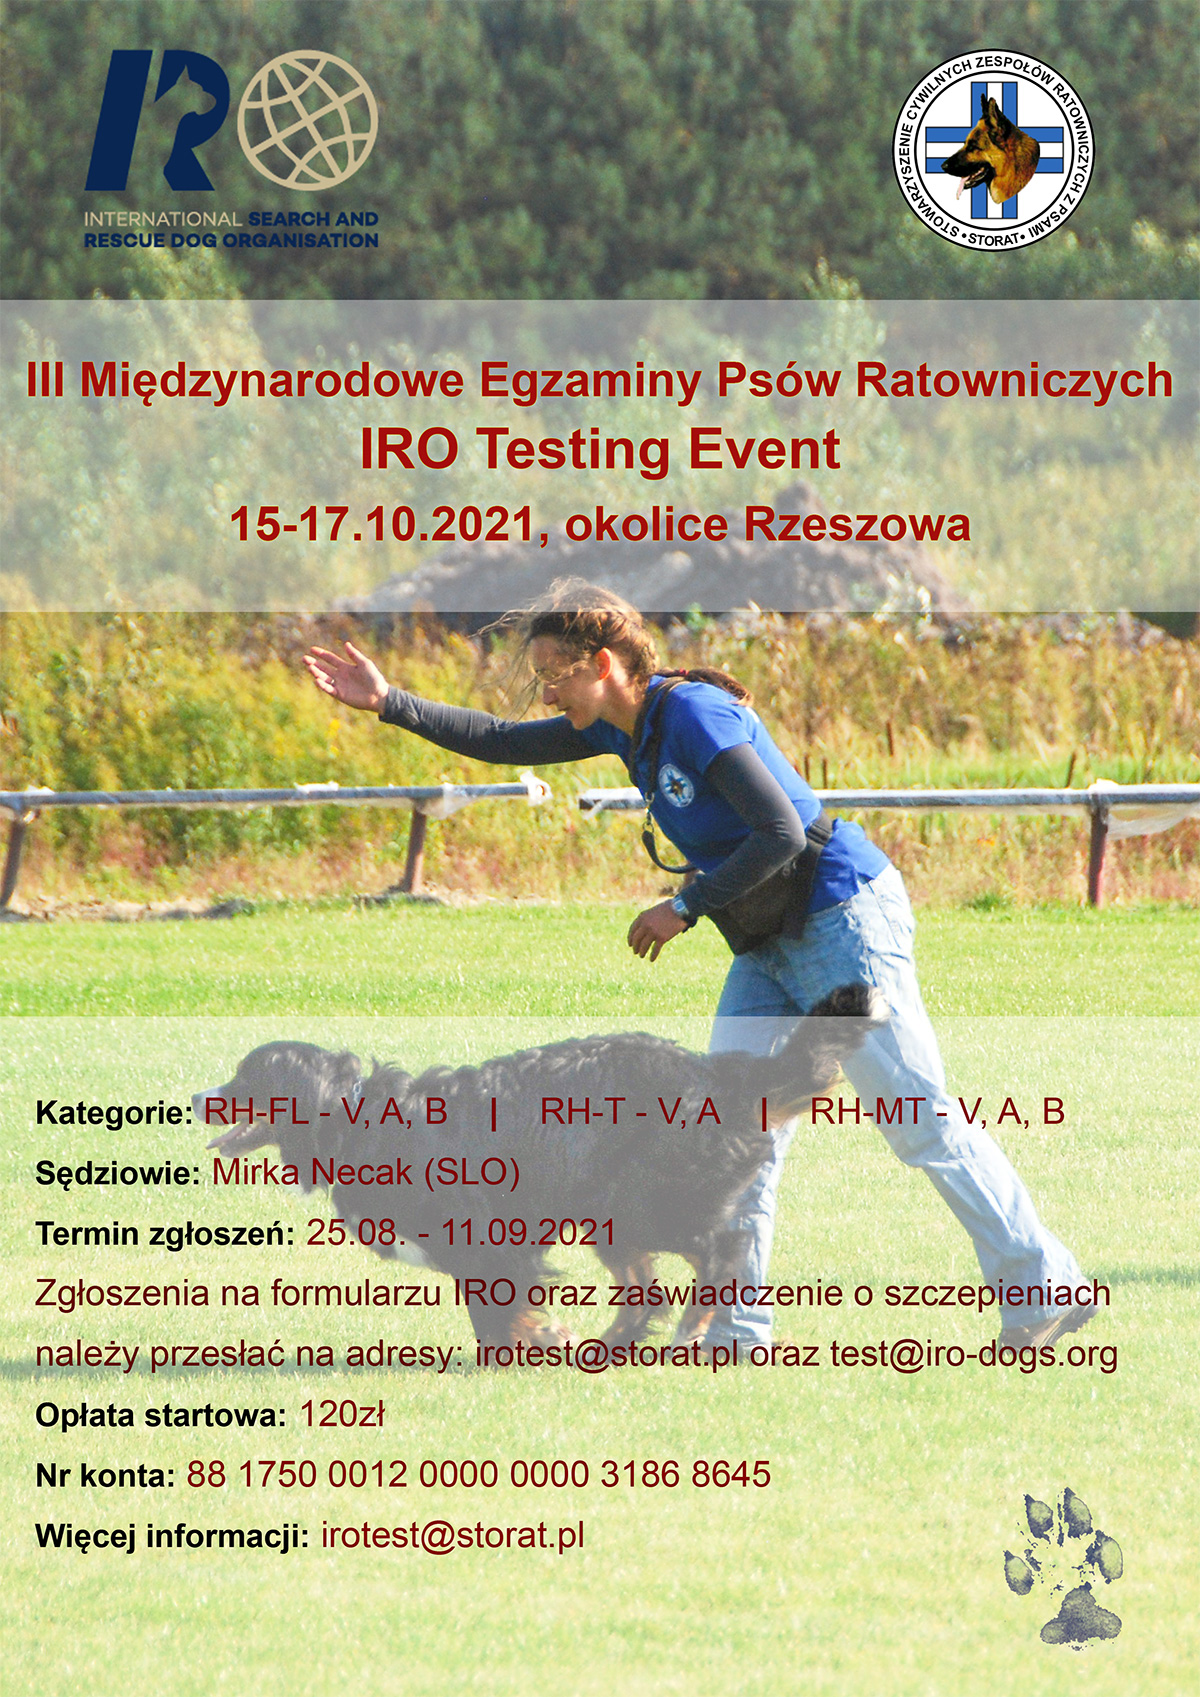 Zapraszamy wszystkich chętnych na III Międzynarodowe Egzaminy Psów Ratowniczych - IRO Testing Event 2021!